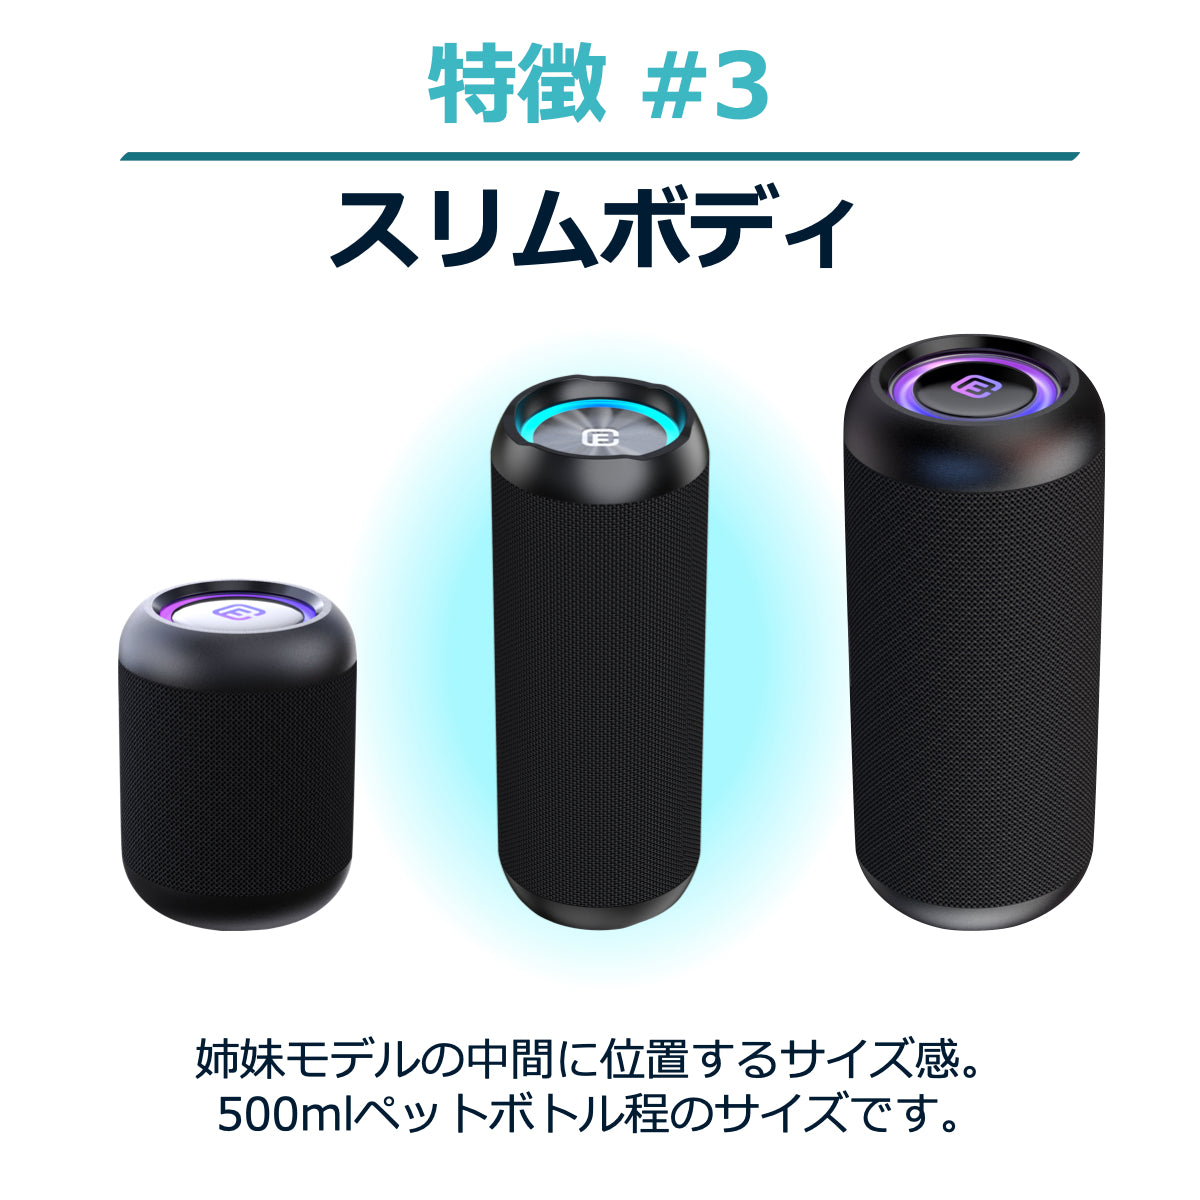 【色:ブラック_スタイル:単品】40s スピーカー Bluetooth 5.0